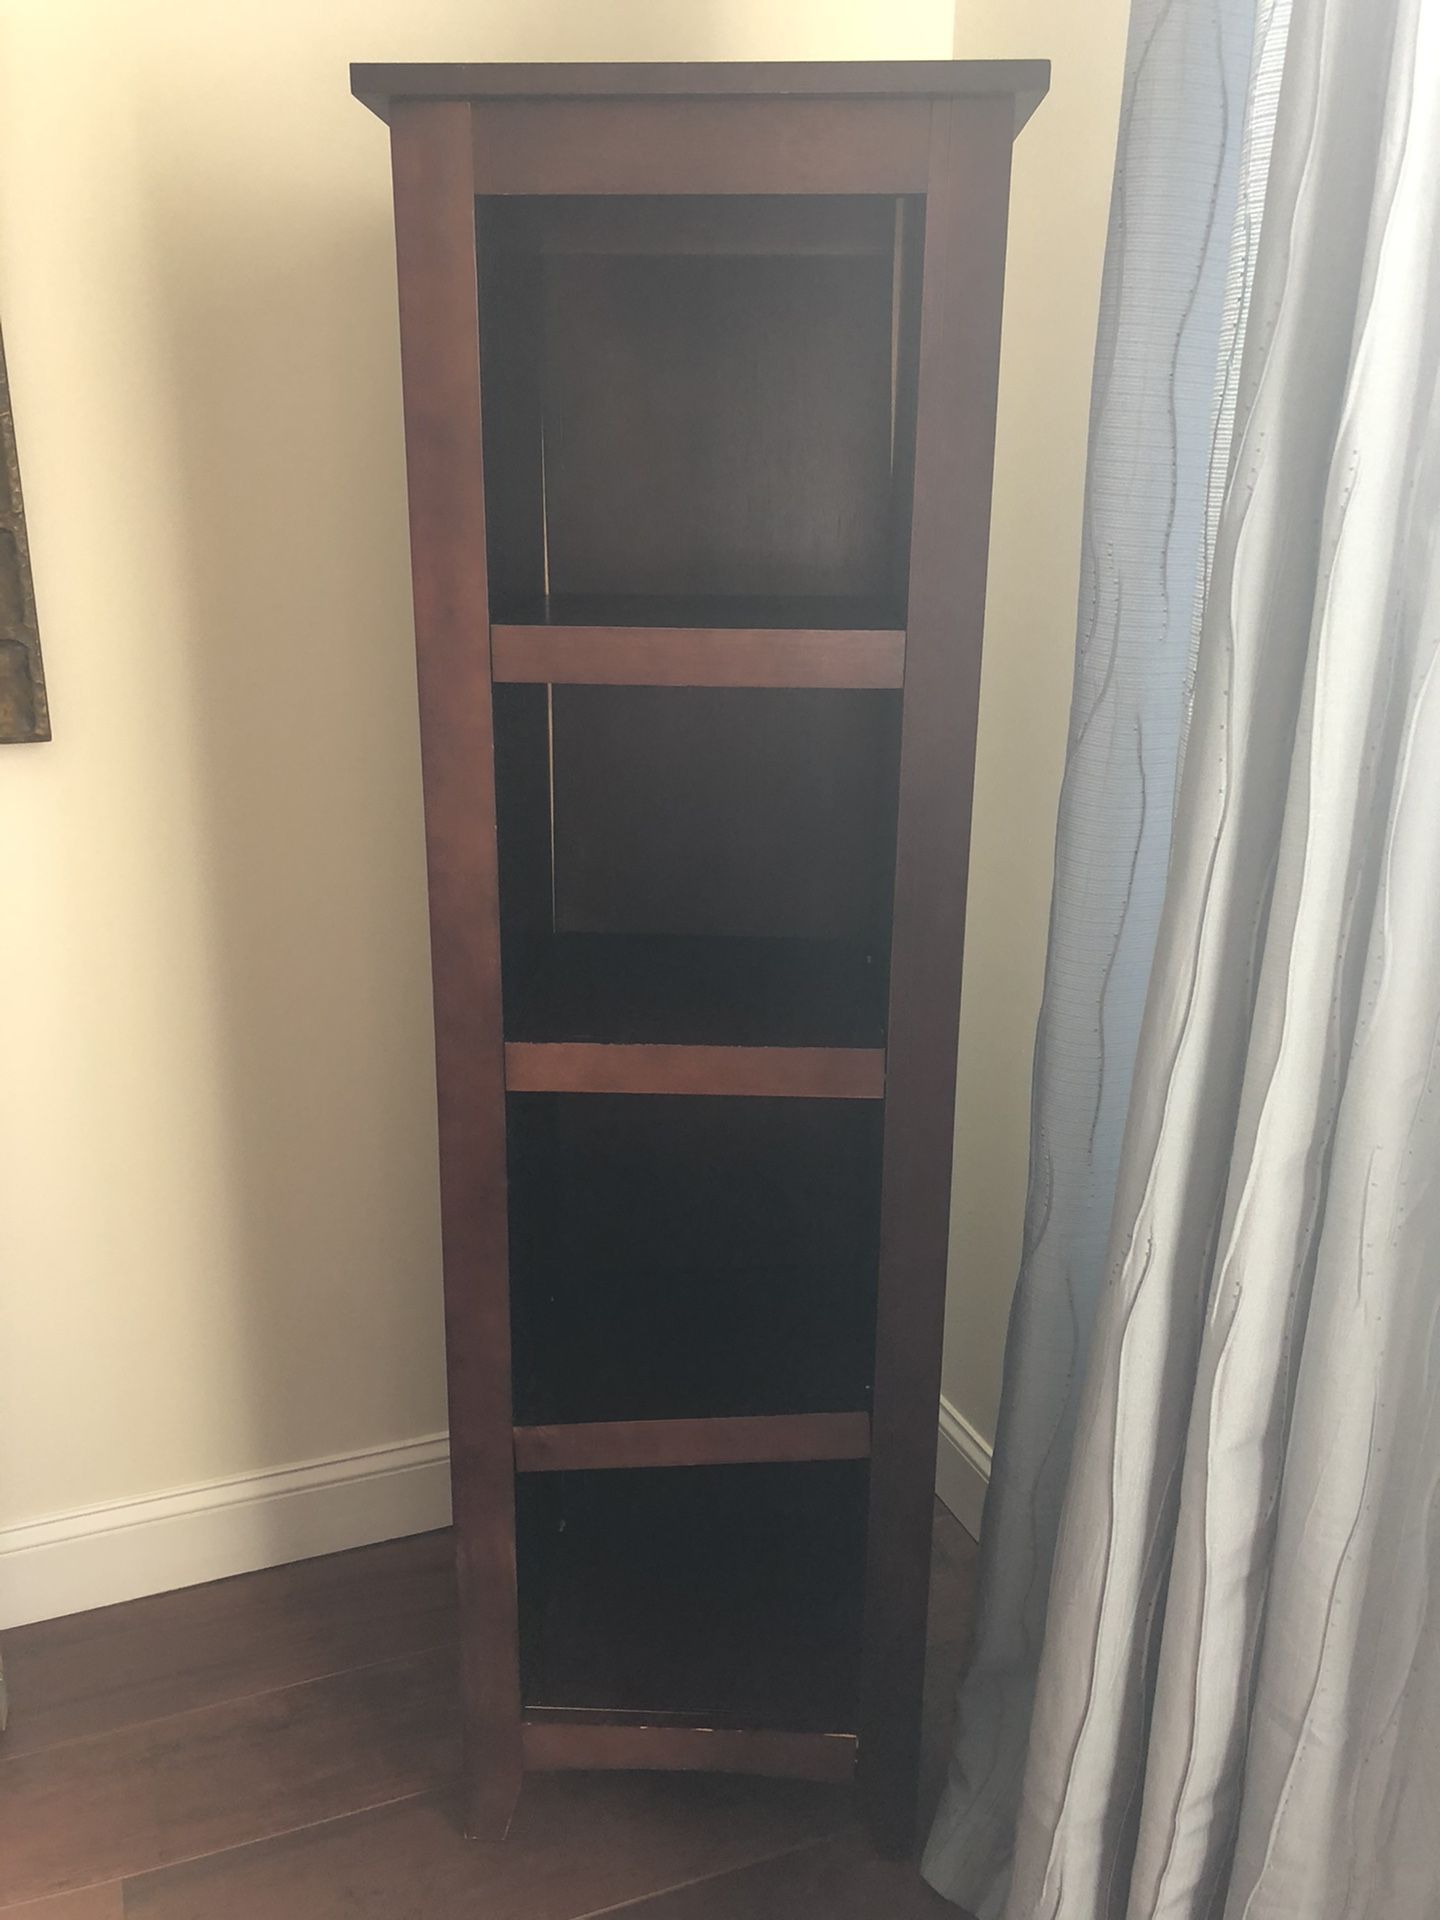 two x dark wood book shelves. 63" tall x 18" wide x 13" deep